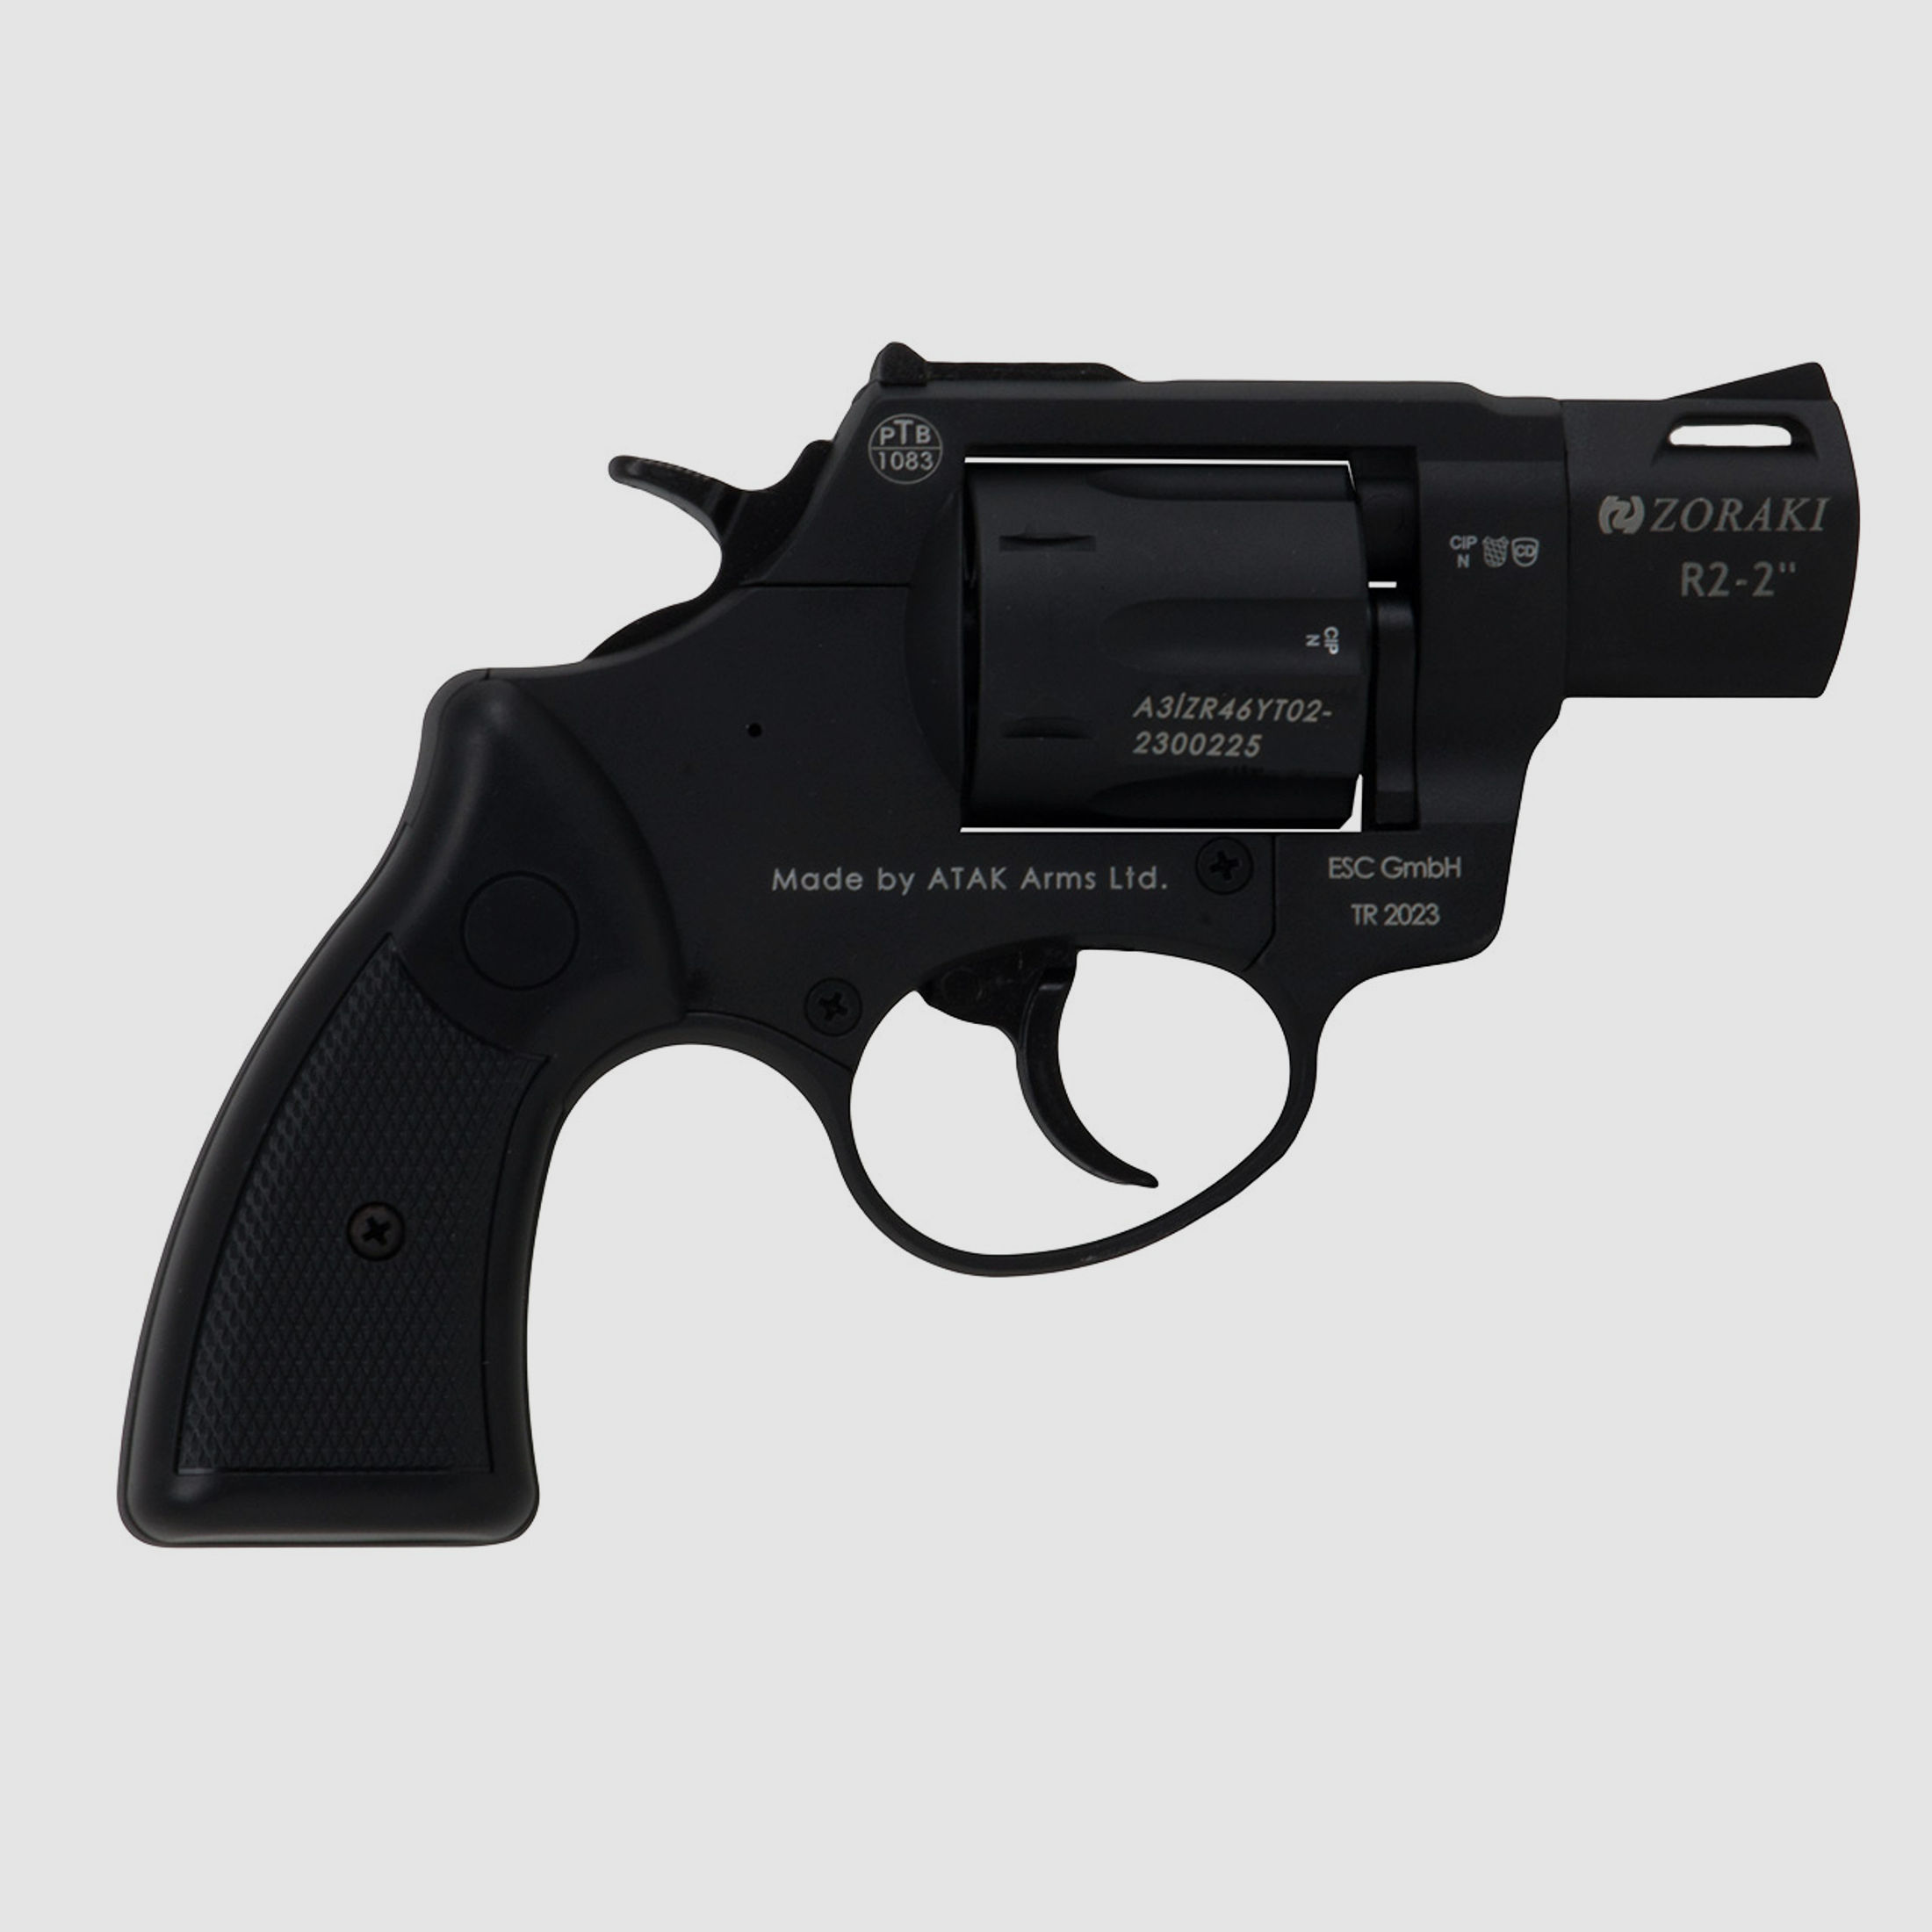 Schreckschuss Revolver Zoraki R2 Black 2 Zoll PTB 1083 Kaliber 9 mm R.K. (P18) + 50 Schuss